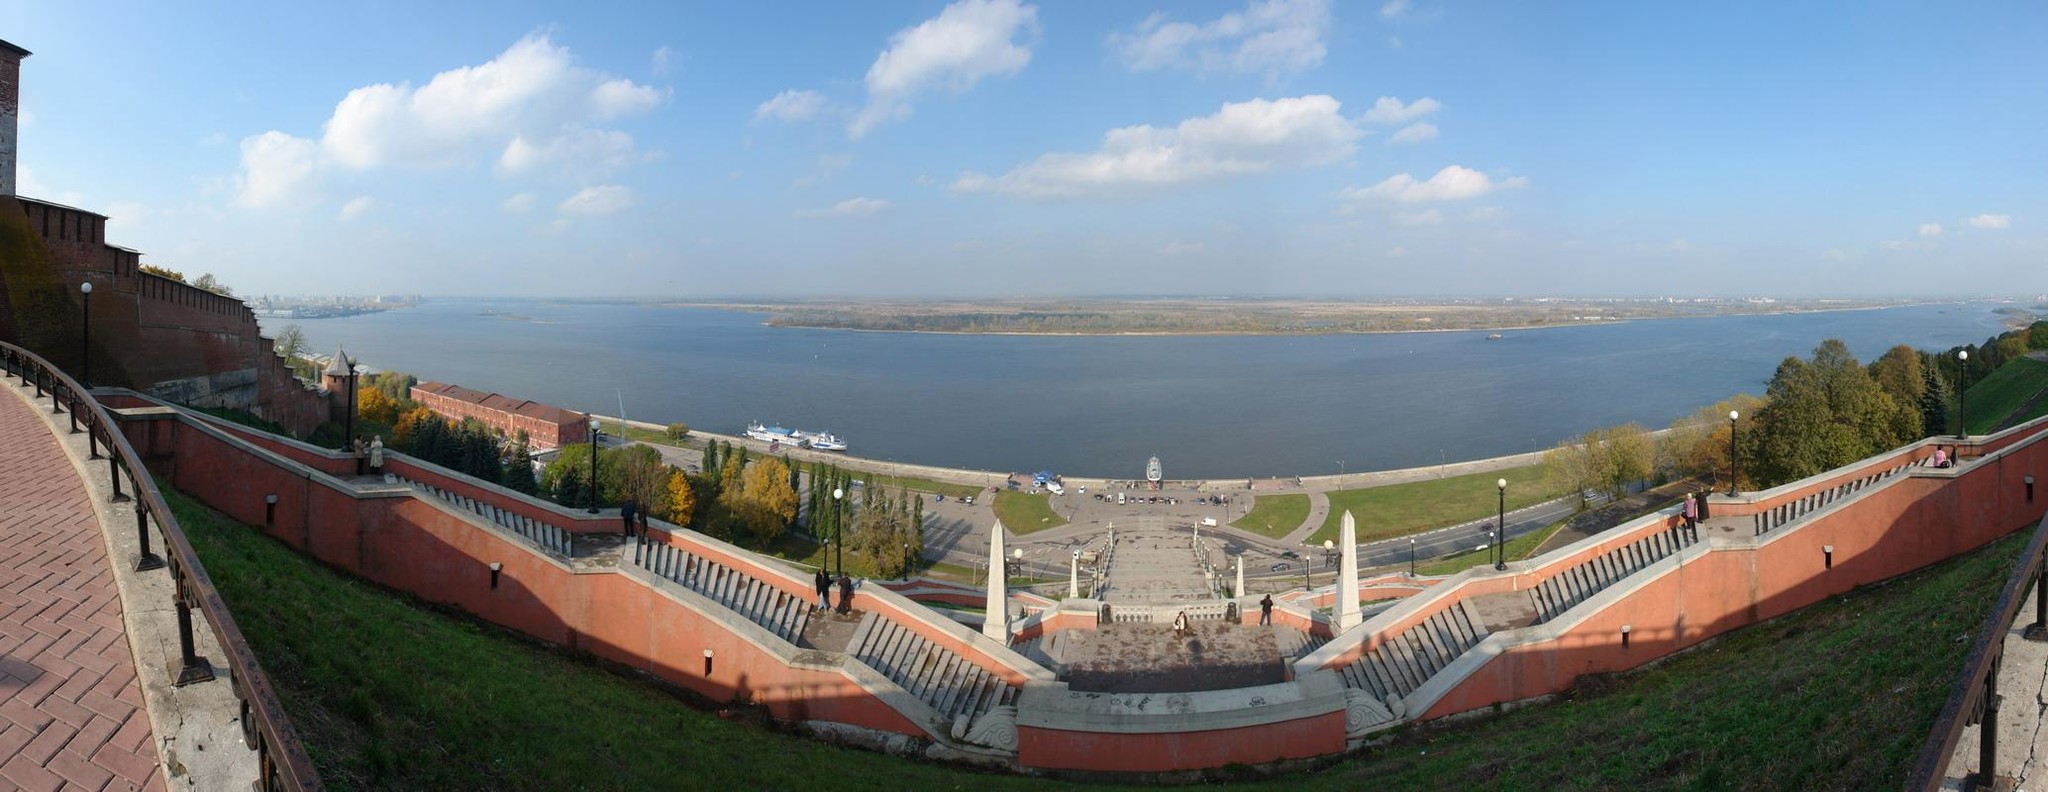 Река Волга Нижний Новгород Чкаловская лестница